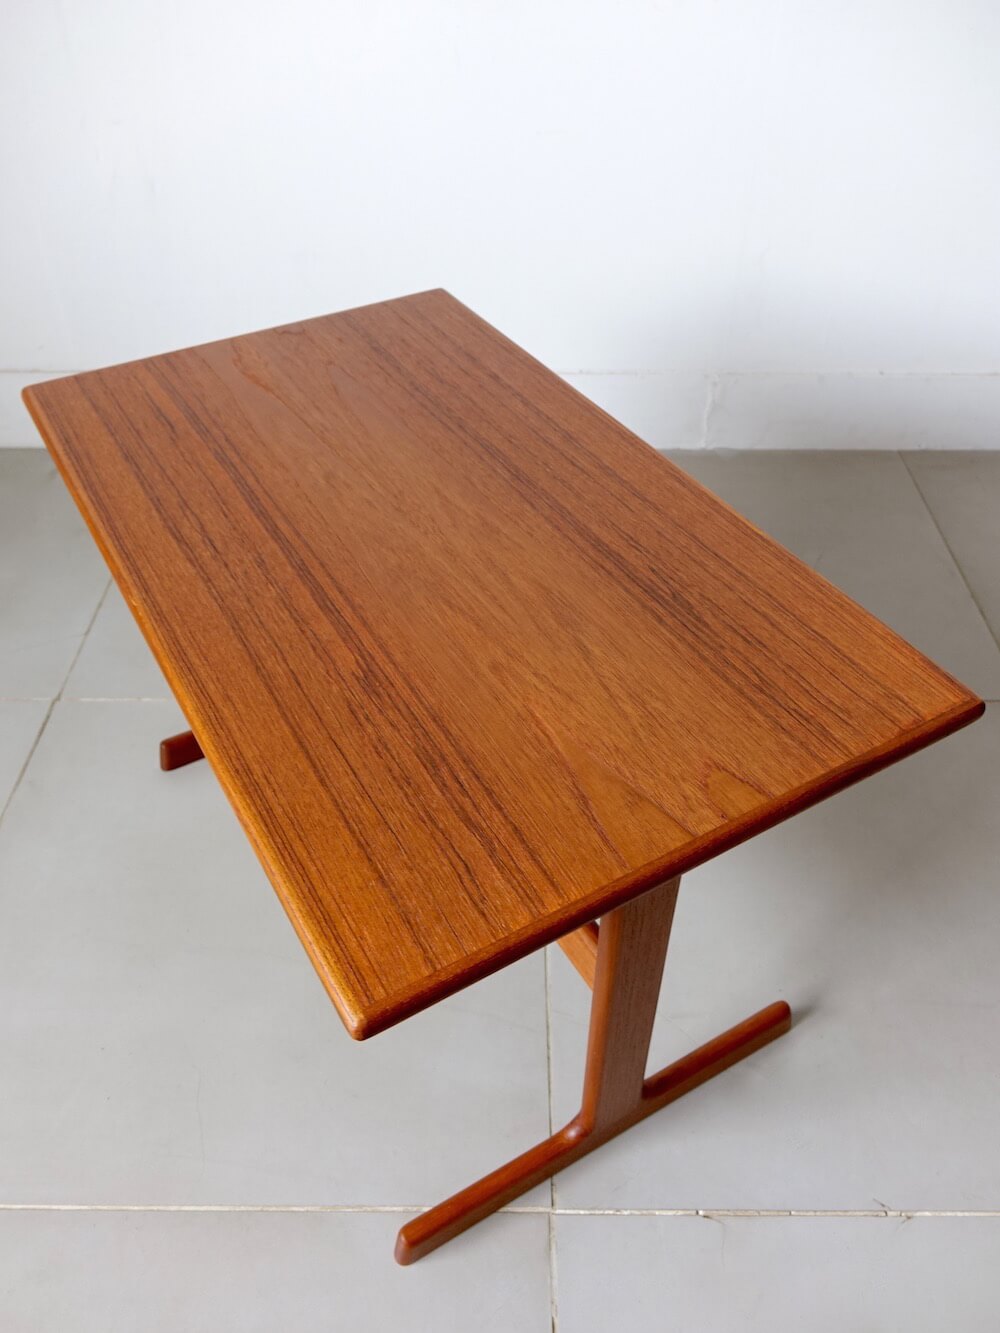 Sewing Table by Kai Kristiansen Vildbjerg Mobelfabrik